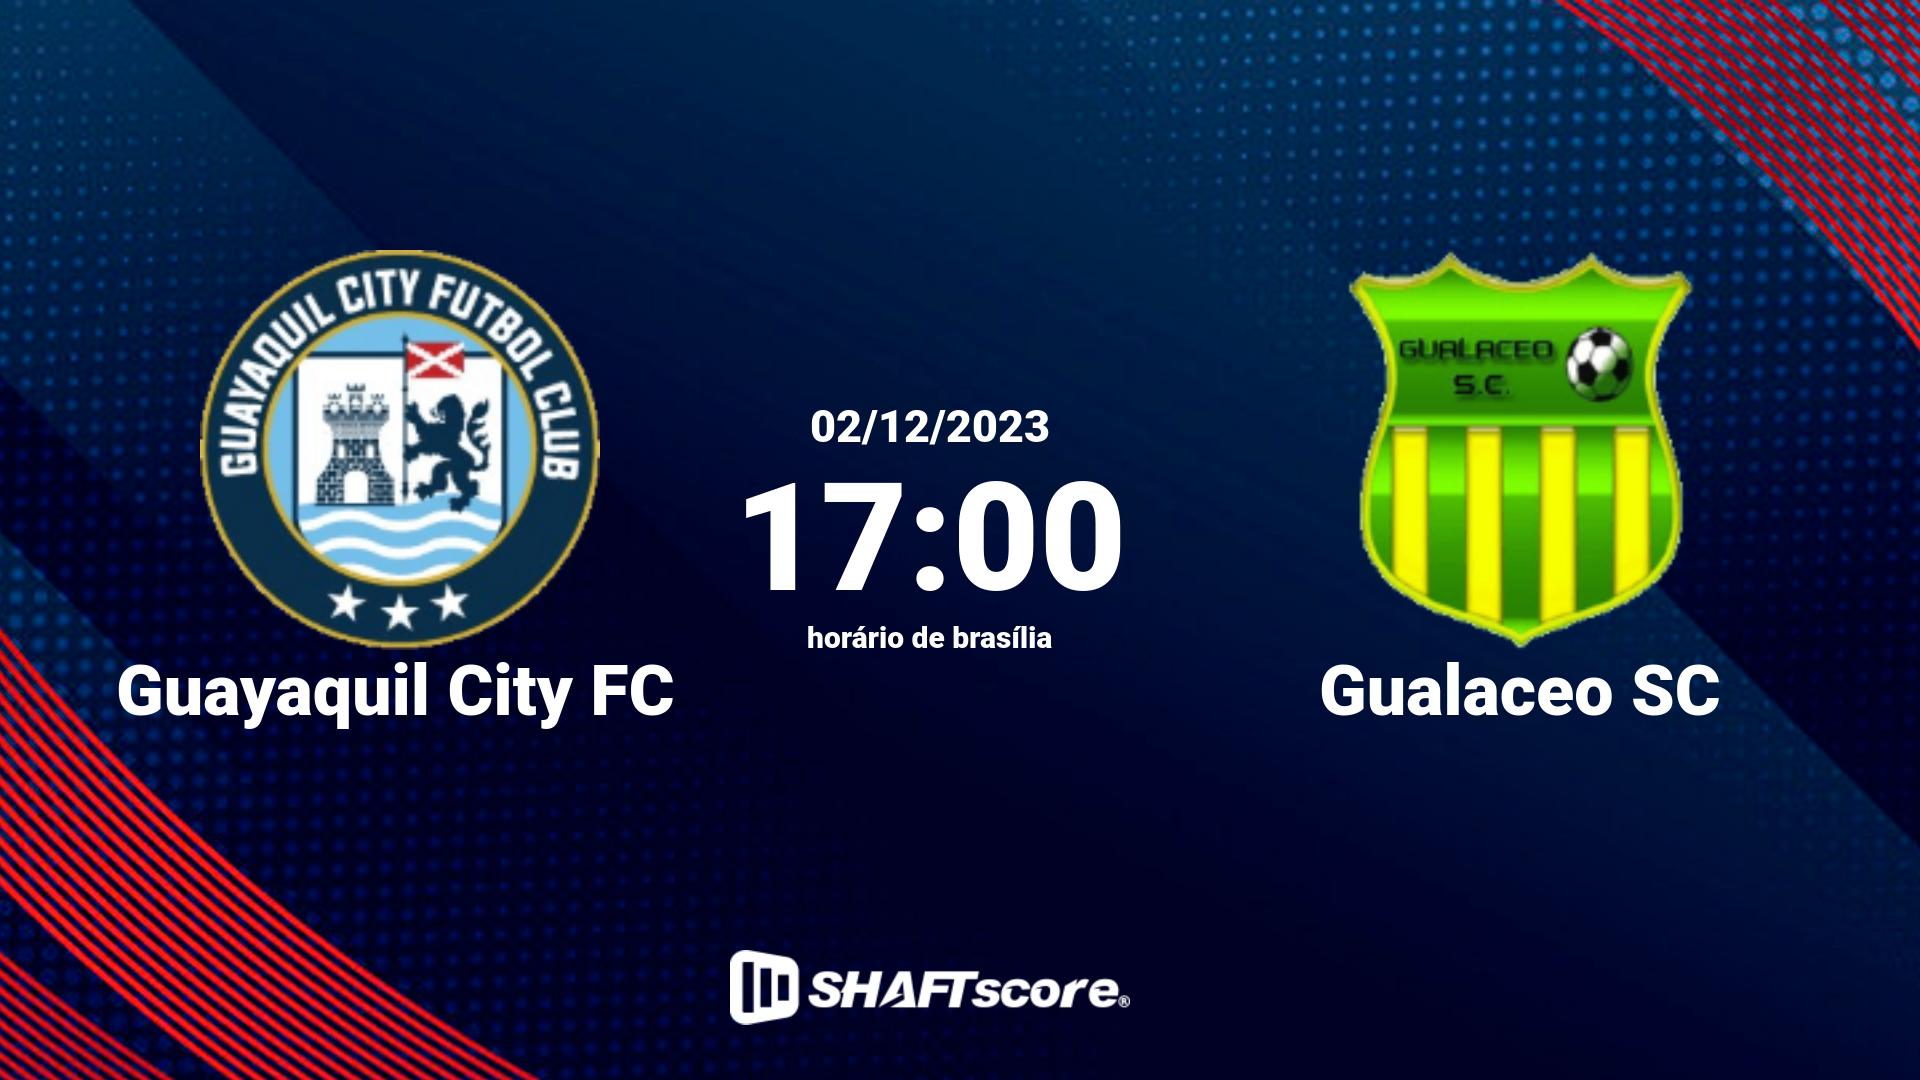 Estatísticas do jogo Guayaquil City FC vs Gualaceo SC 02.12 17:00